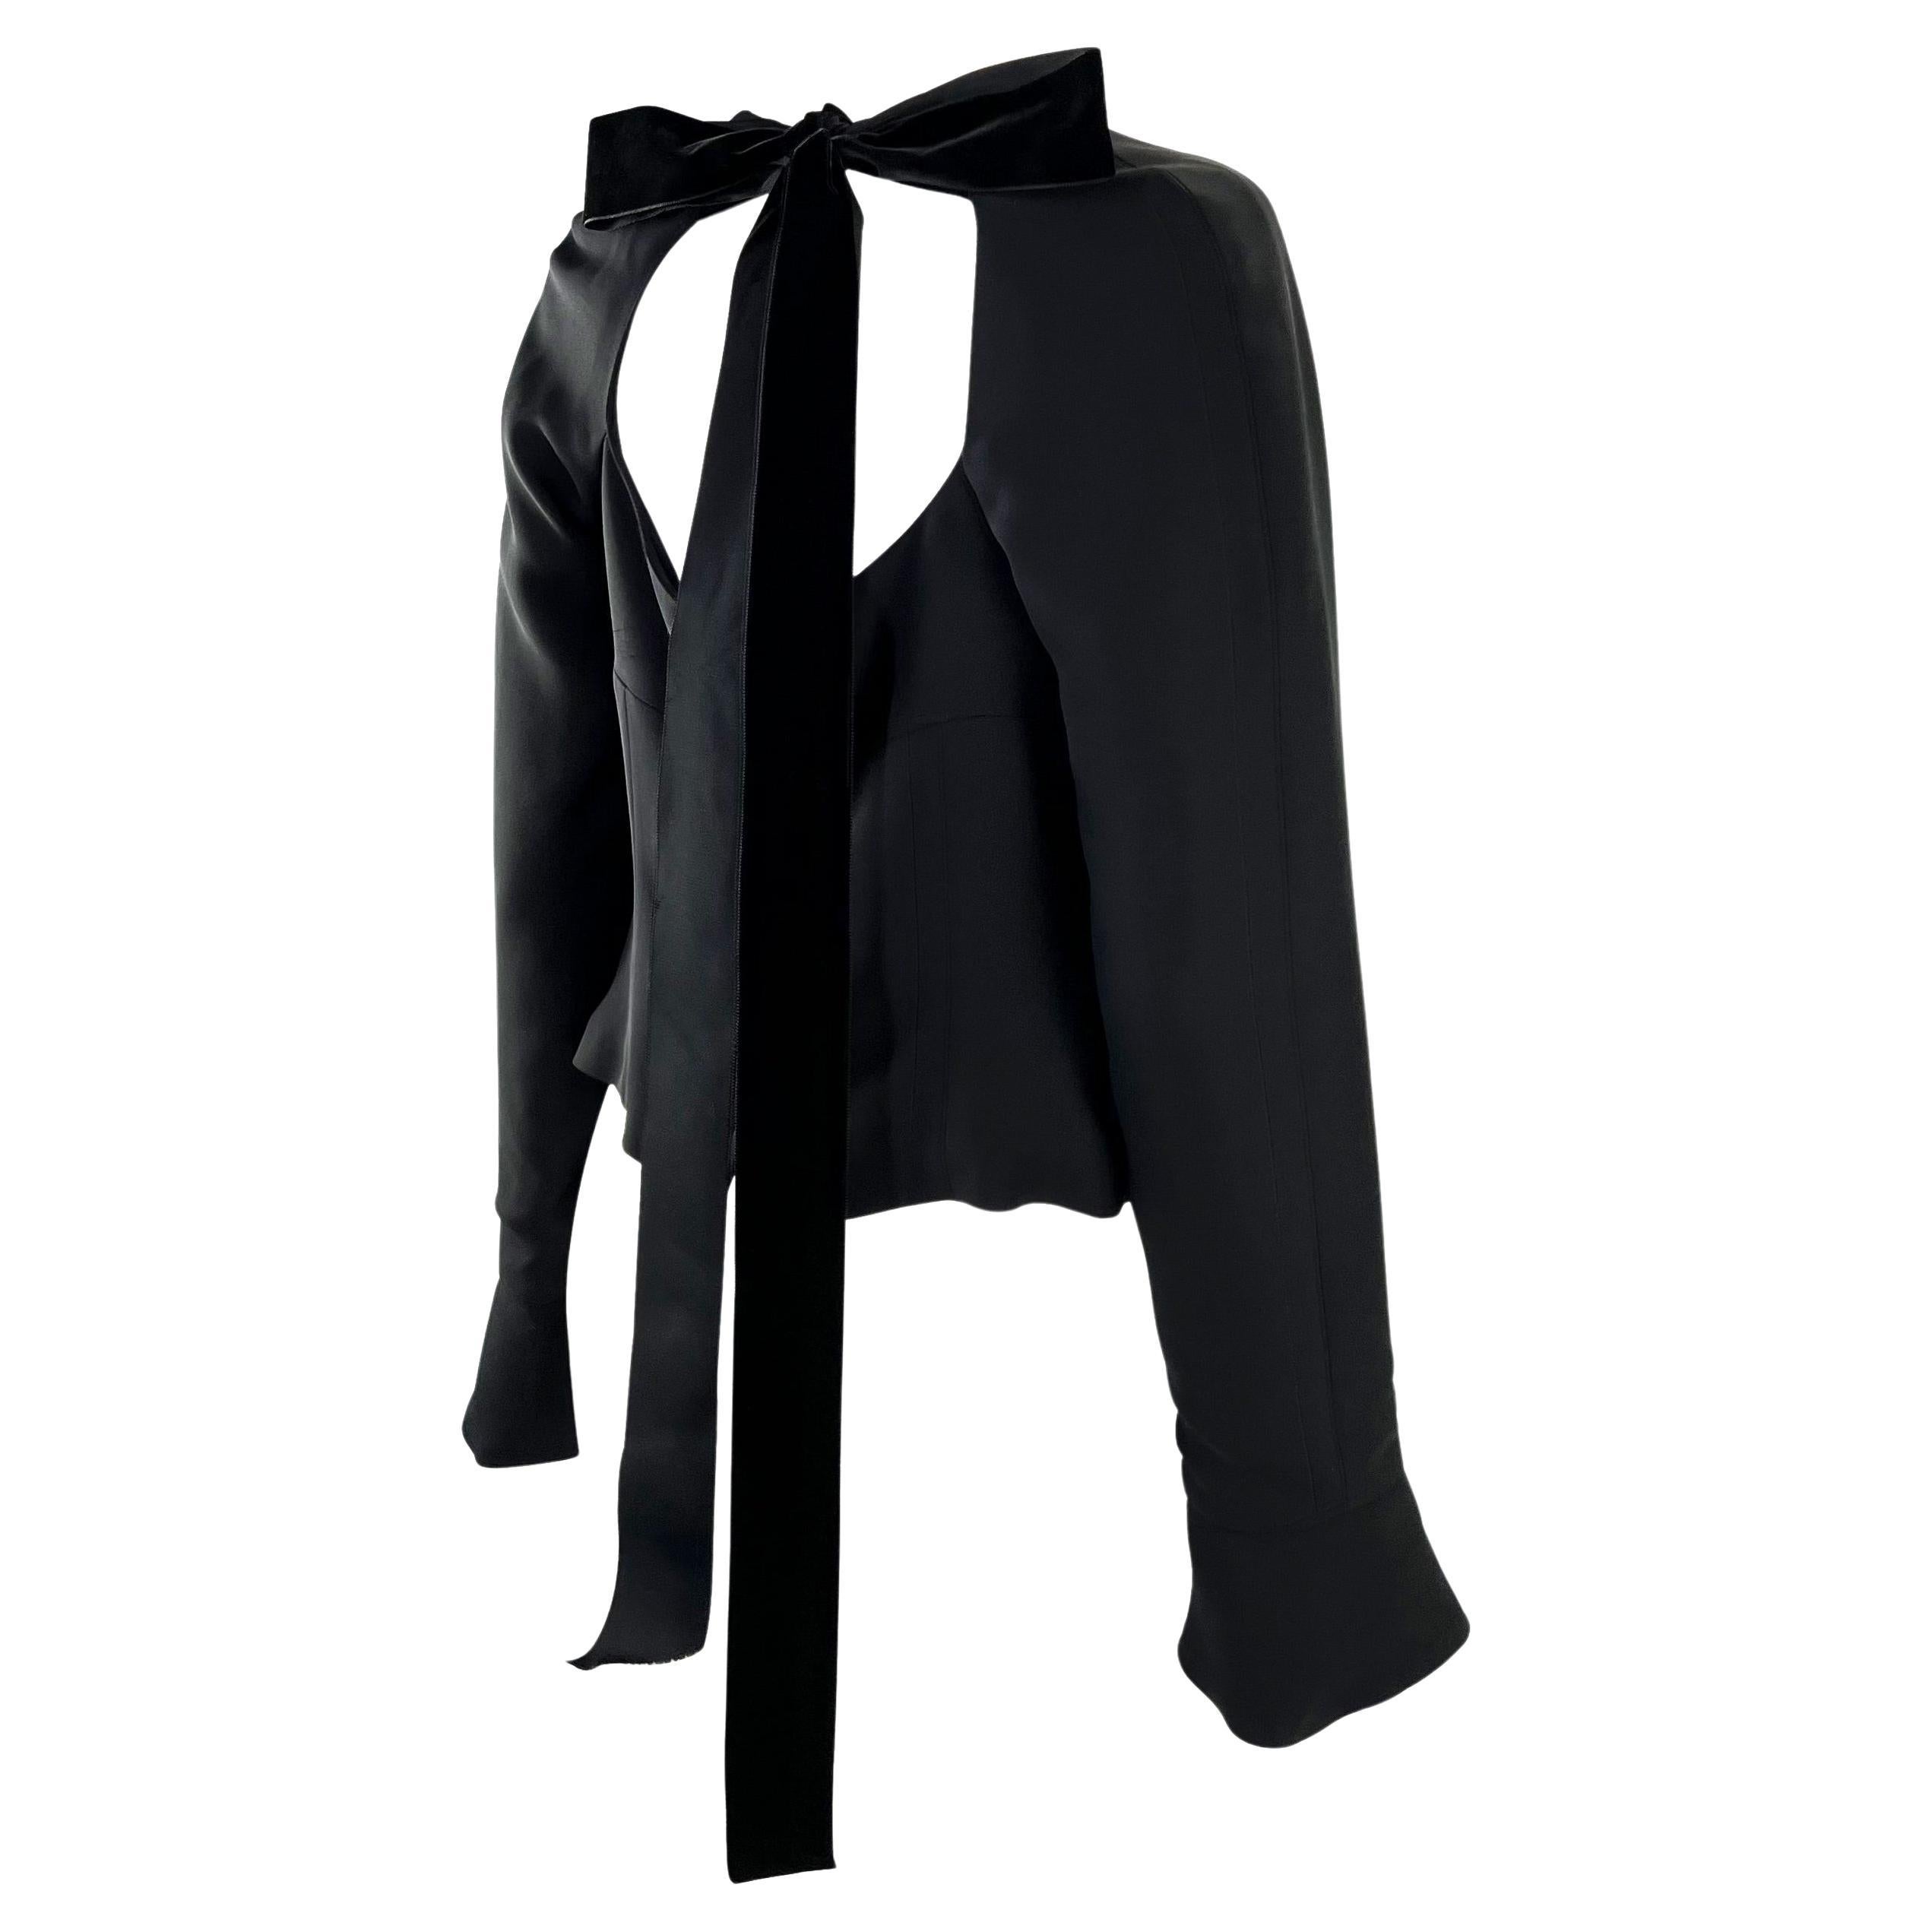 Wir präsentieren eine zeitlose schwarze Yves Saint Laurent Rive Gauche Bluse, entworfen von Tom Ford. Dieses atemberaubende Oberteil in Schwarz aus der Herbst/Winter-Kollektion 2001 hat einen taillierten Schnitt und einen offenen Ausschnitt. Die